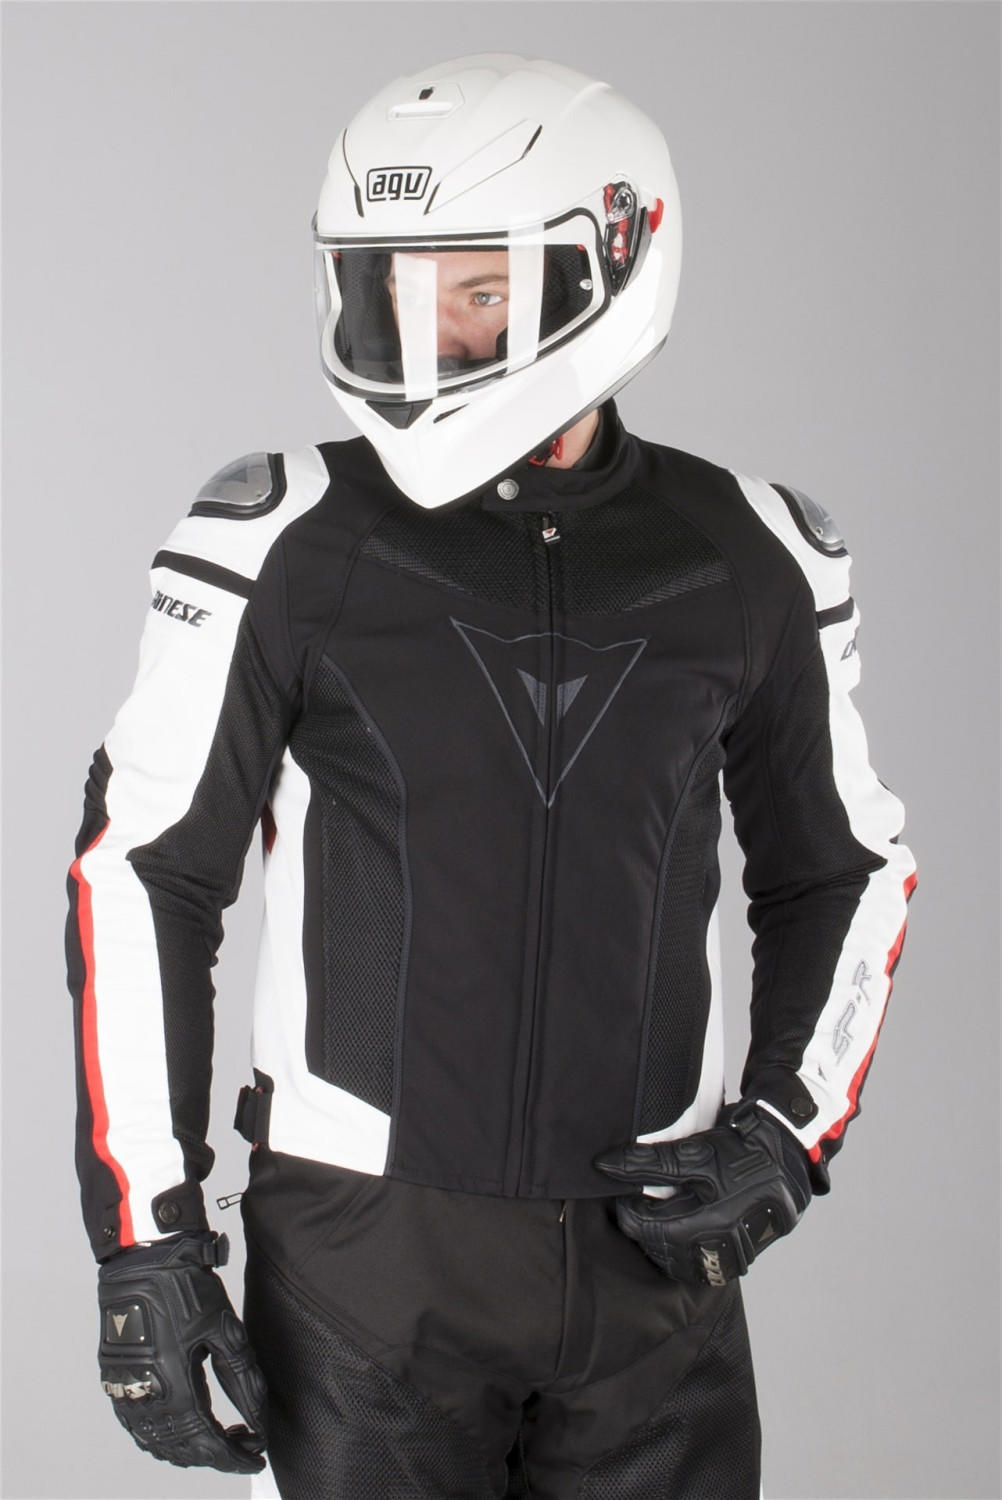 Dainese G. Super Speed Tex Jacket black/white/red